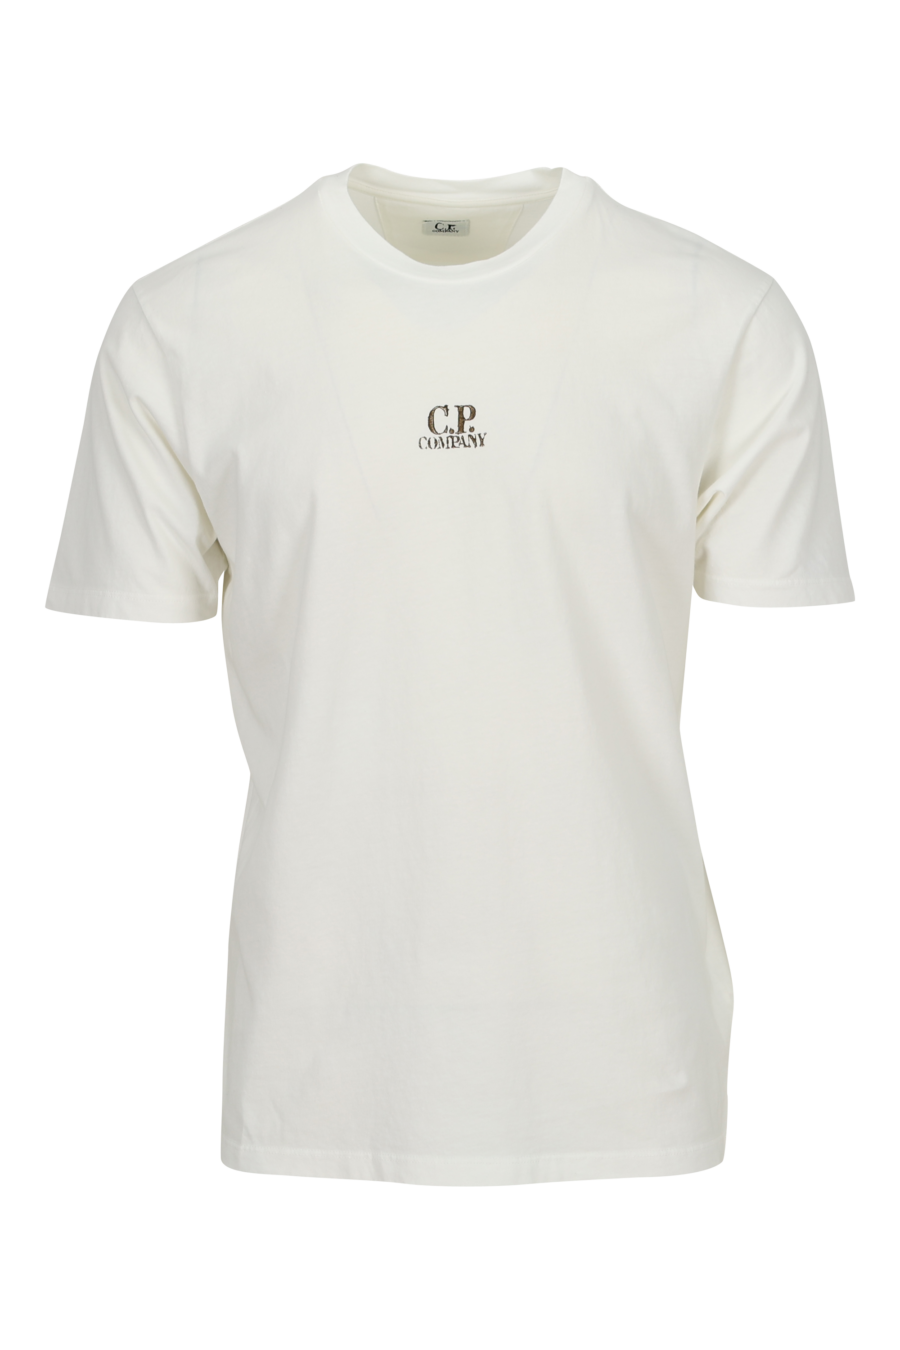 Camiseta blanca con minilogo "cp" centrado - 7620943776584